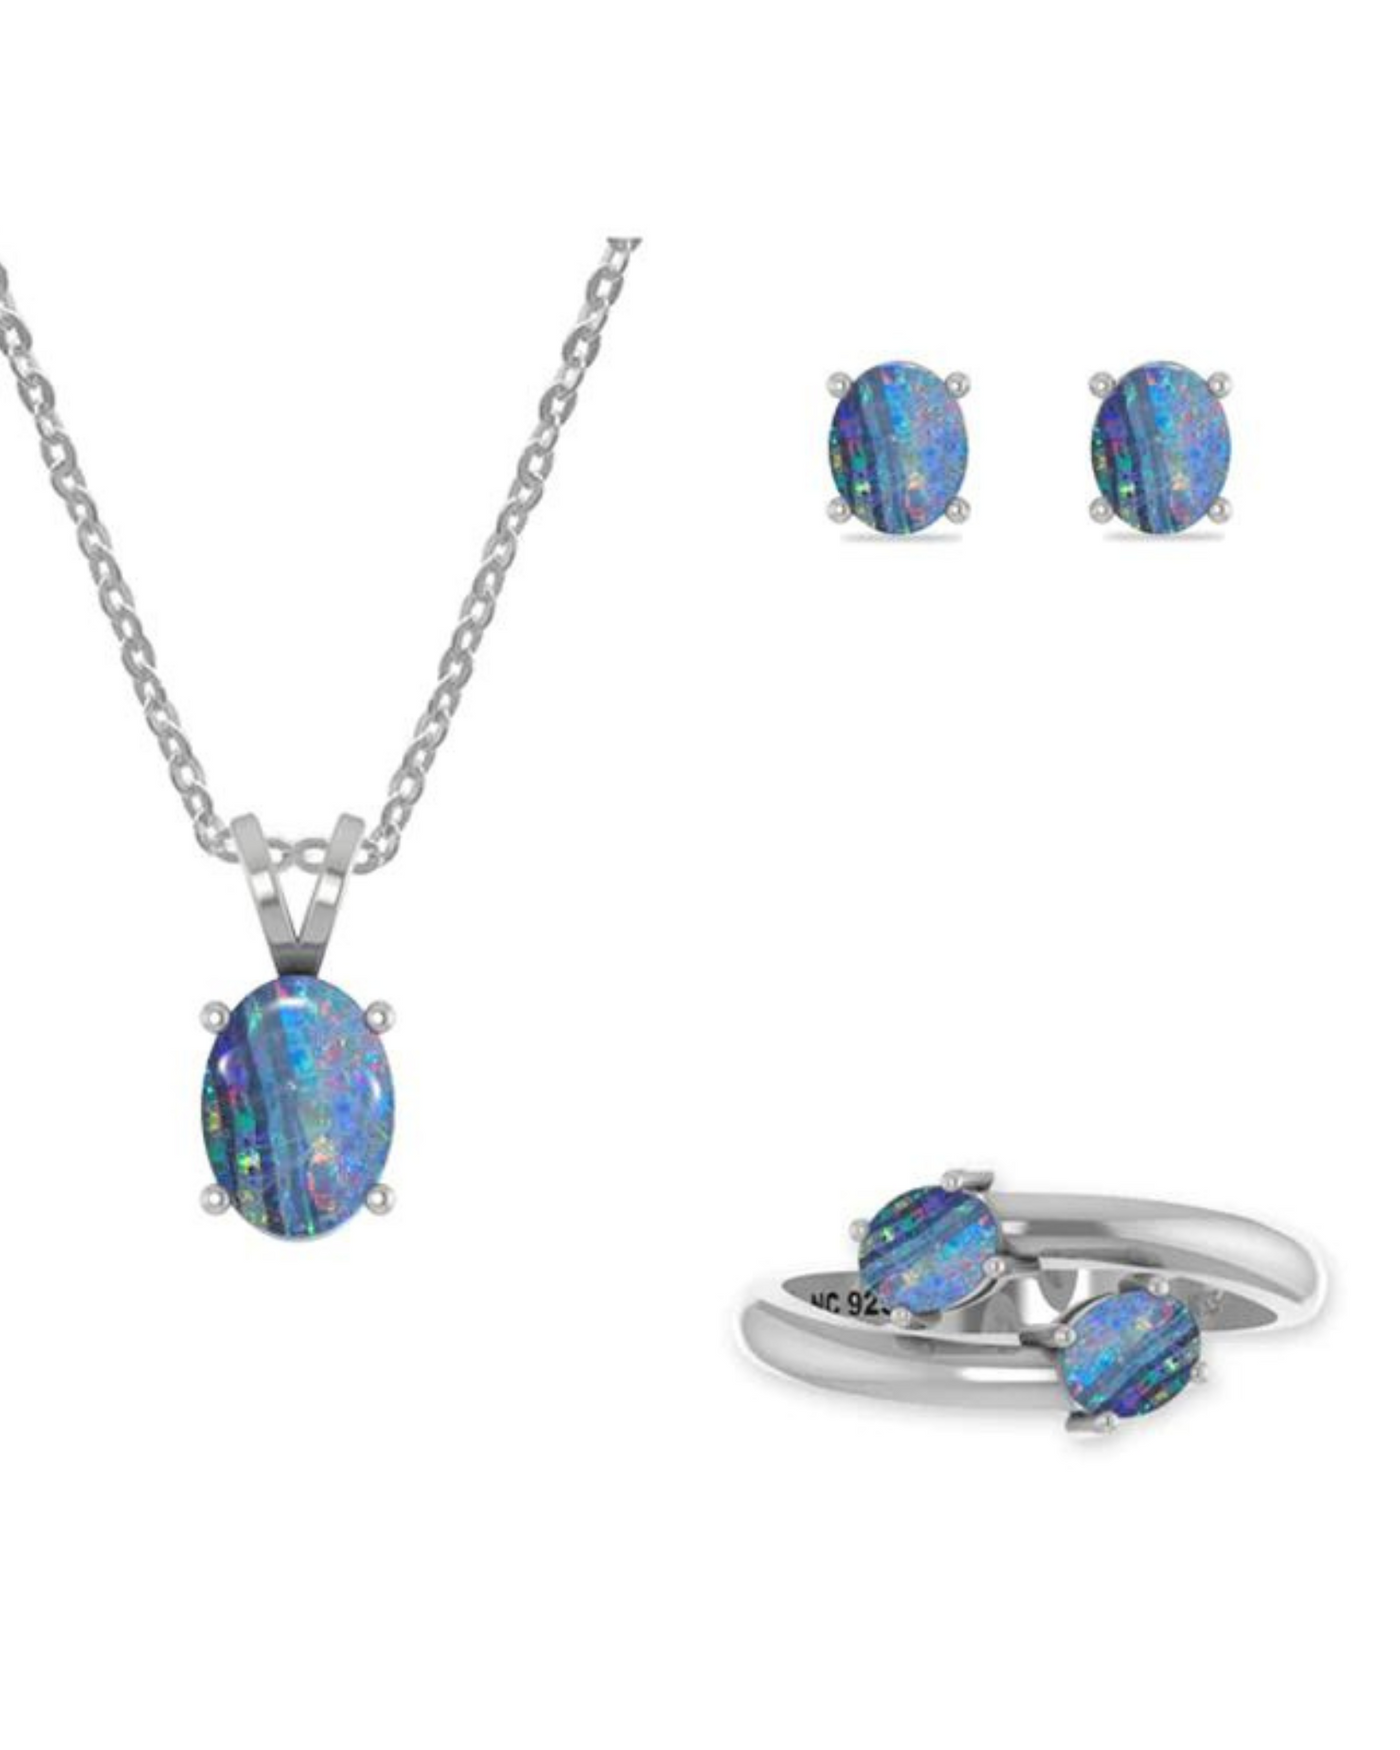 Australian Opal Jewellery Silver Set 925